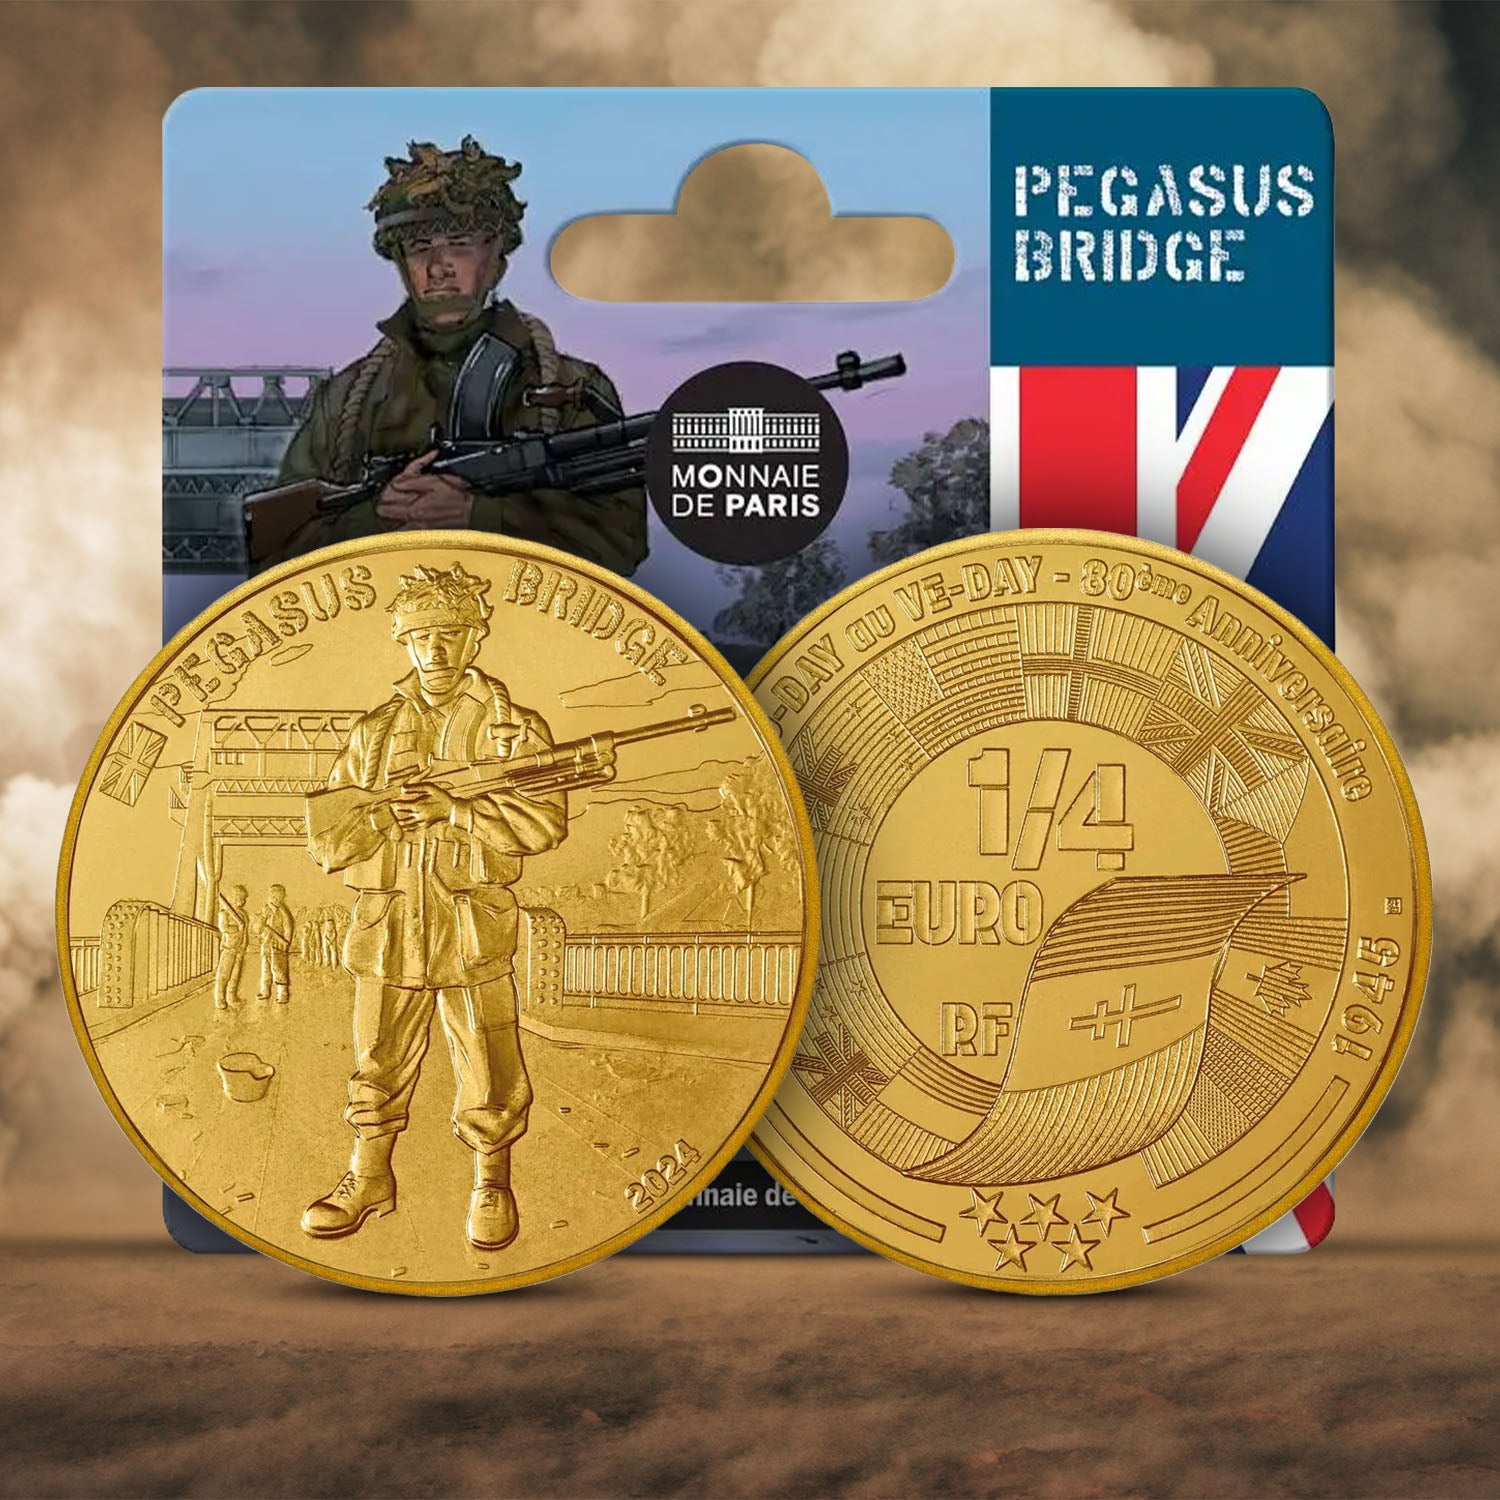 Pegasus Bridge - Britain D-Day 80th Anniversary 1/4€ coin